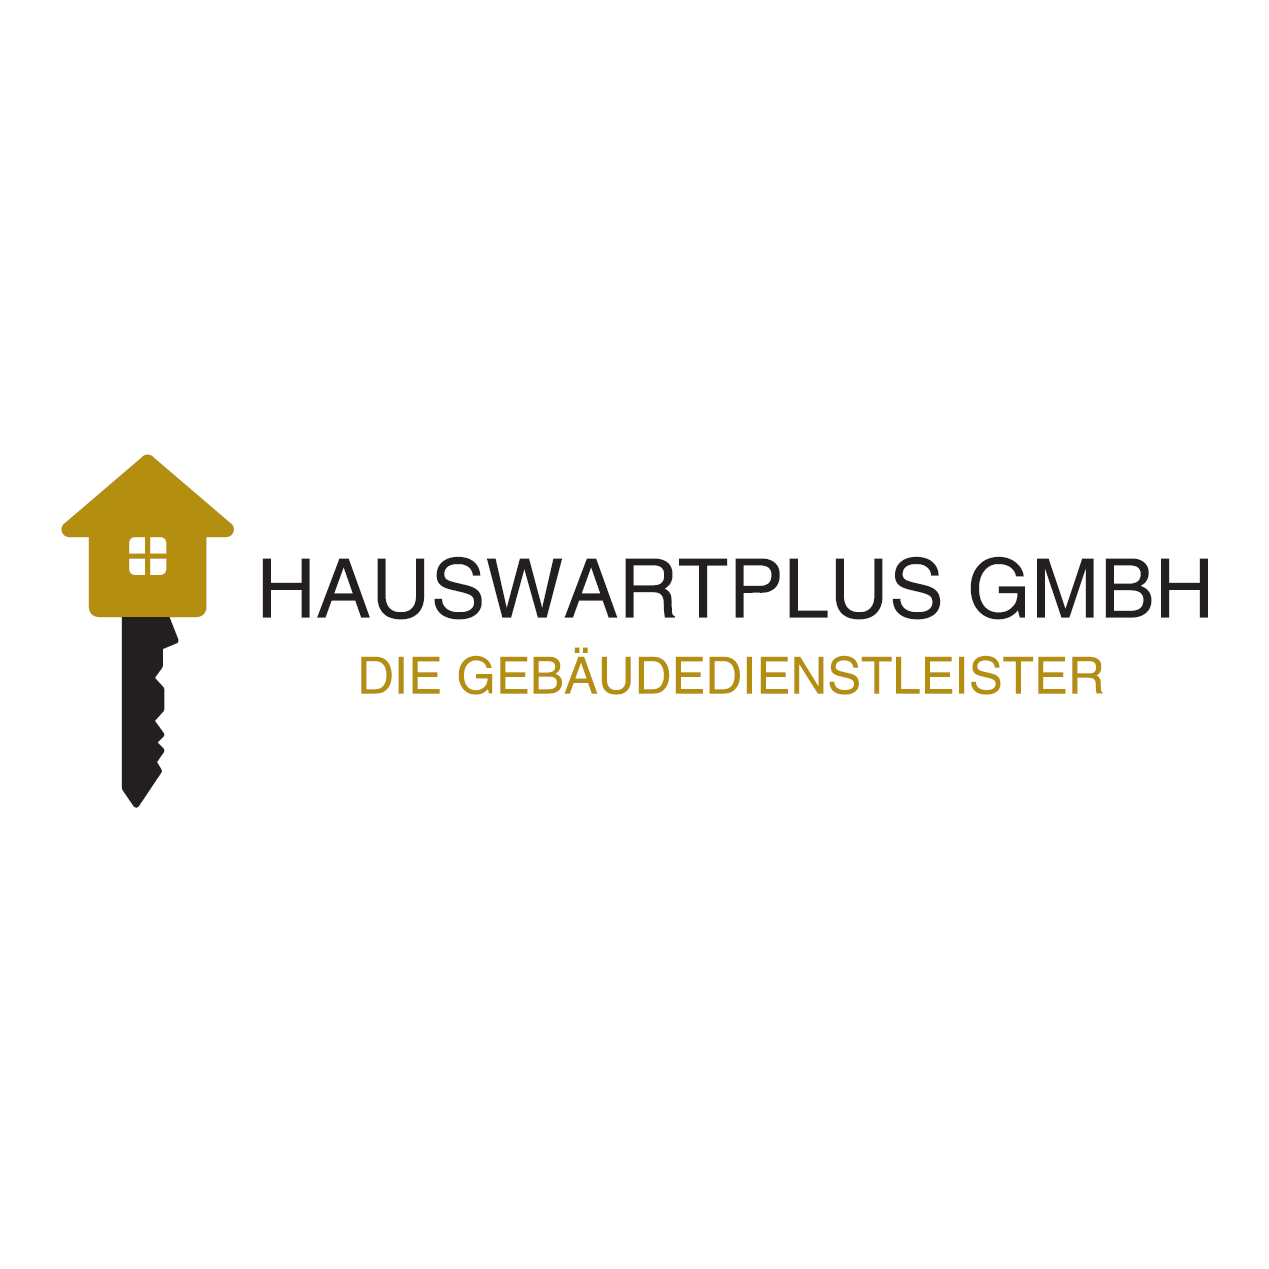 Hauswartplus GmbH Logo